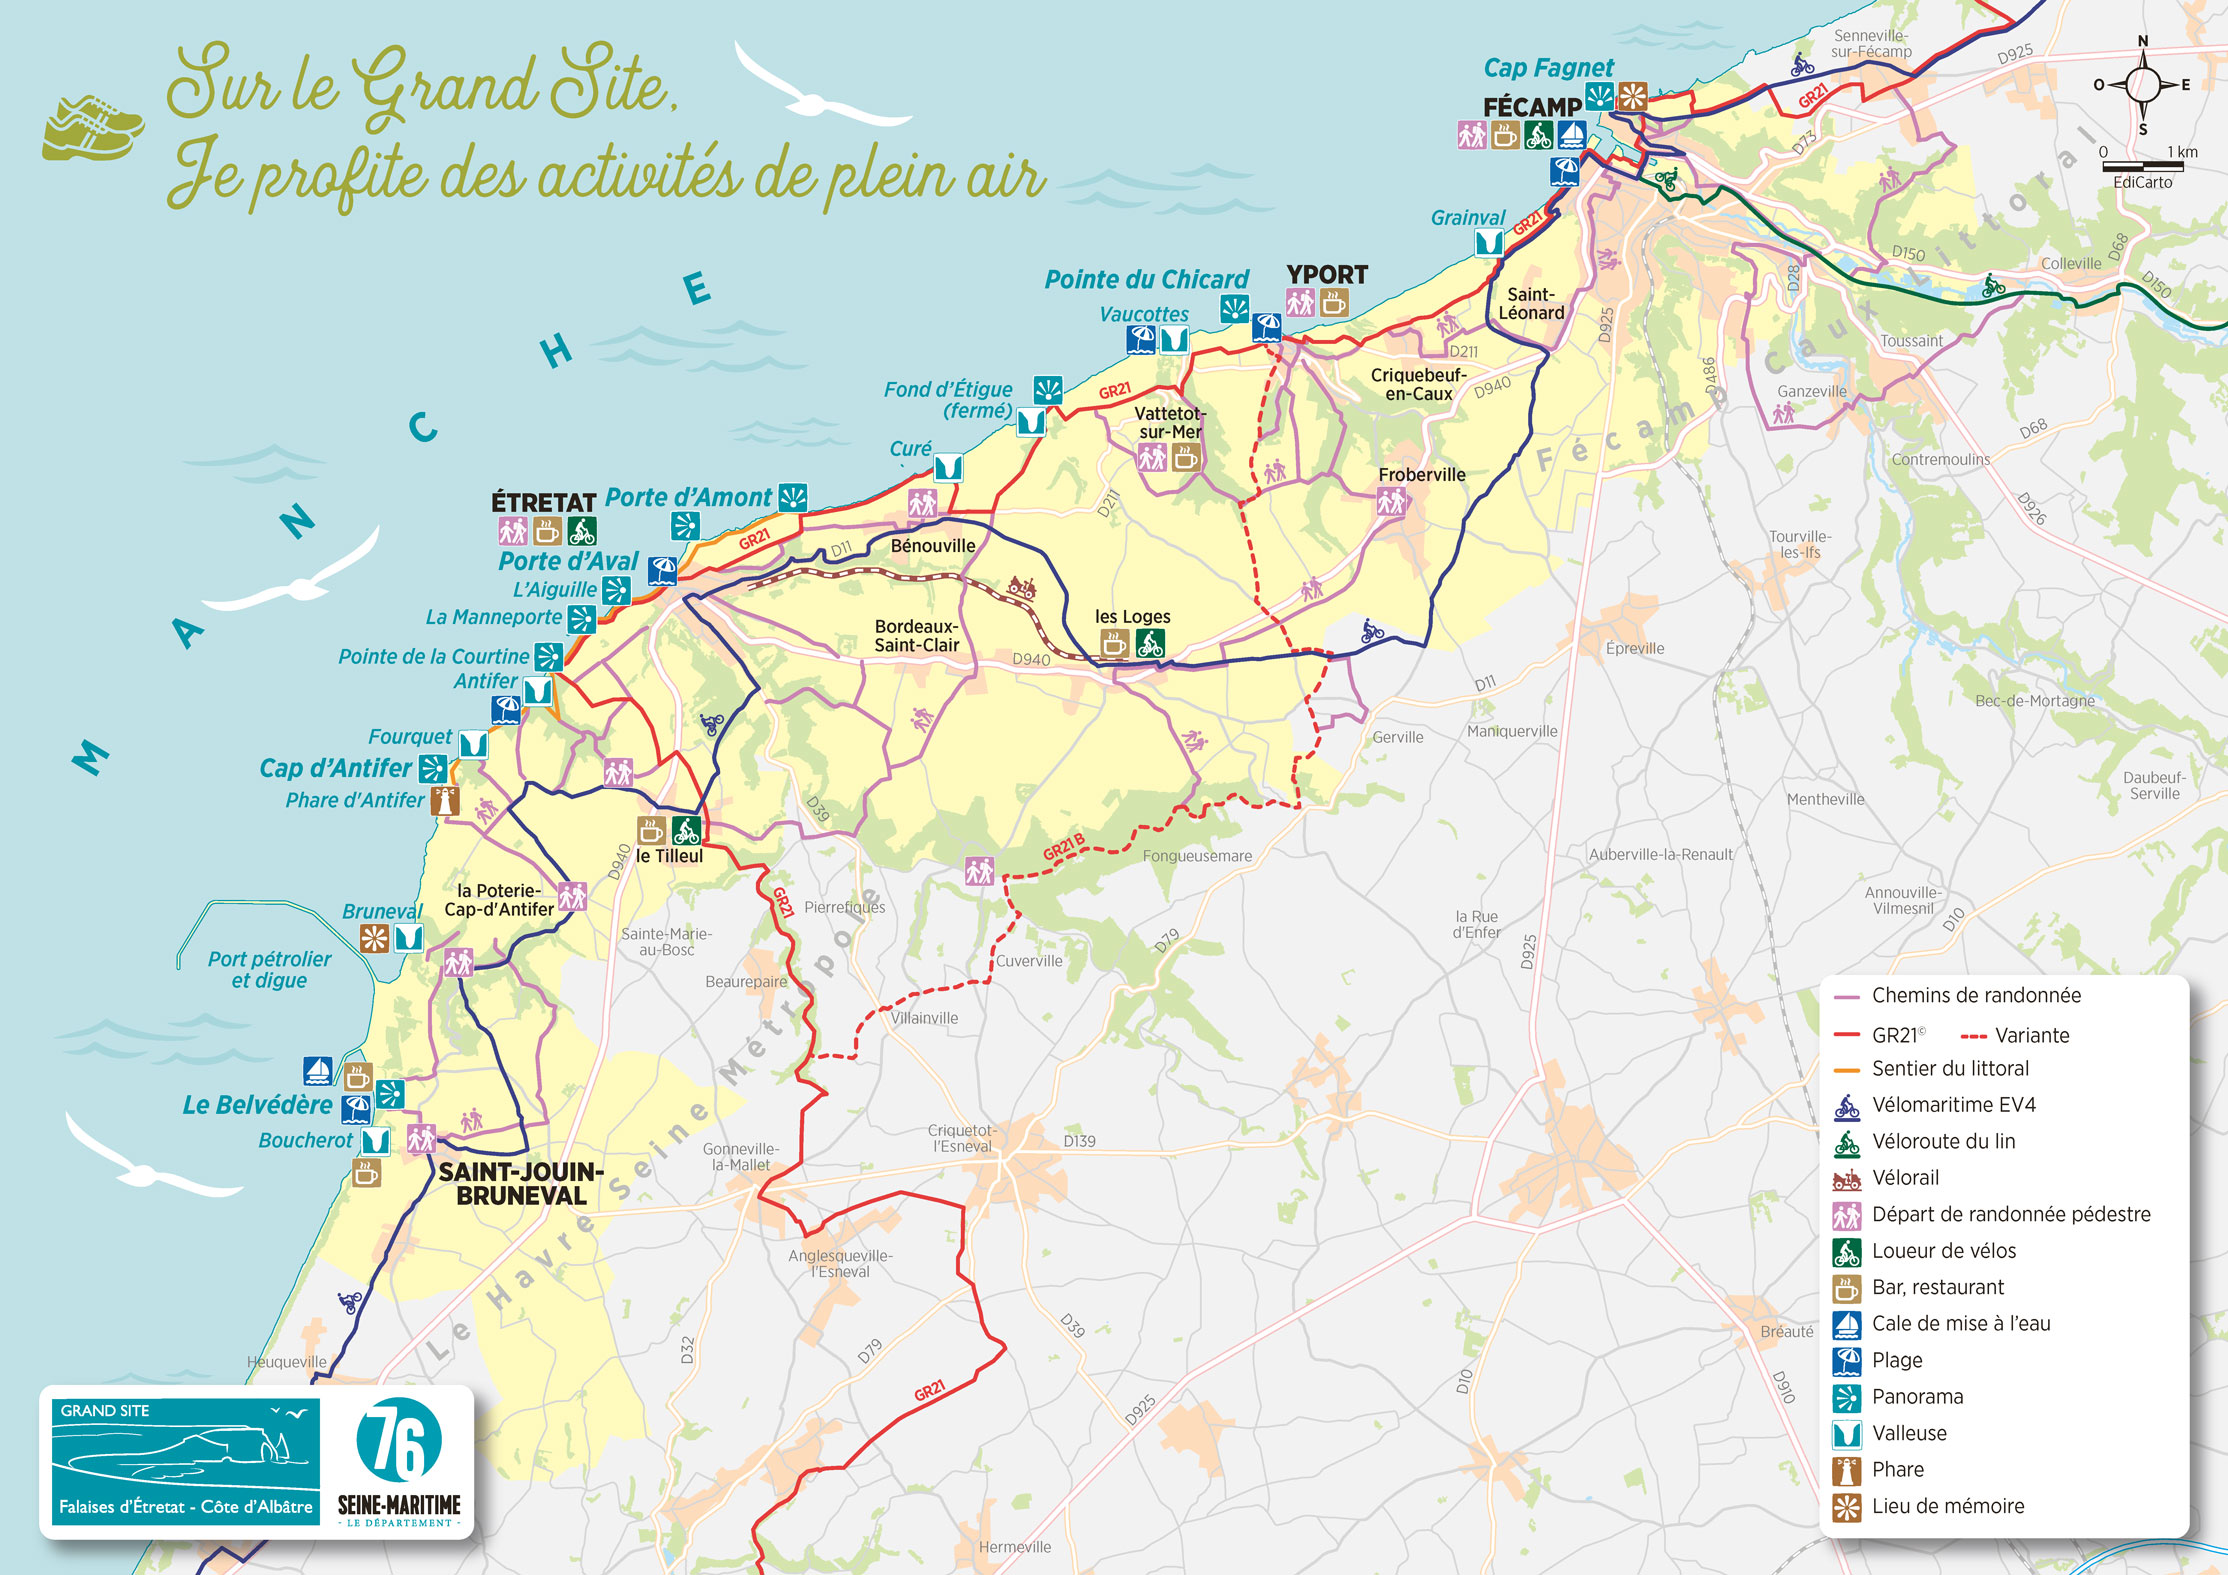 Grand site Falaises d'Etretat côte d'Albatre - EdiCarto - agence de cartographie spécialisée - Toursime Loisirs - carte touristique